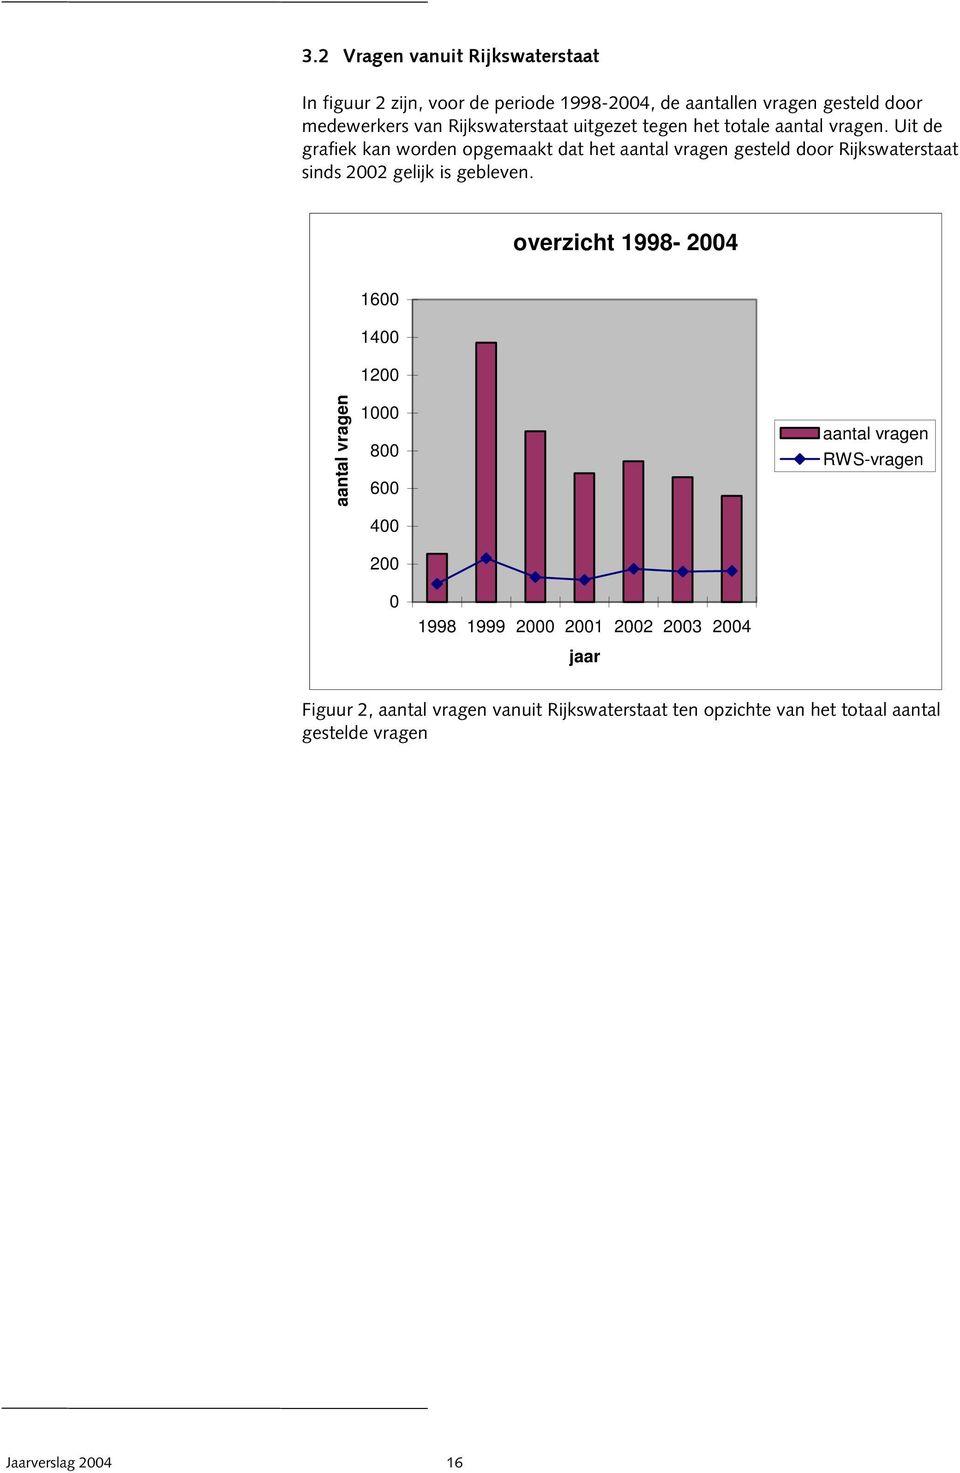 Uit de grafiek kan worden opgemaakt dat het aantal vragen gesteld door Rijkswaterstaat sinds 2002 gelijk is gebleven.